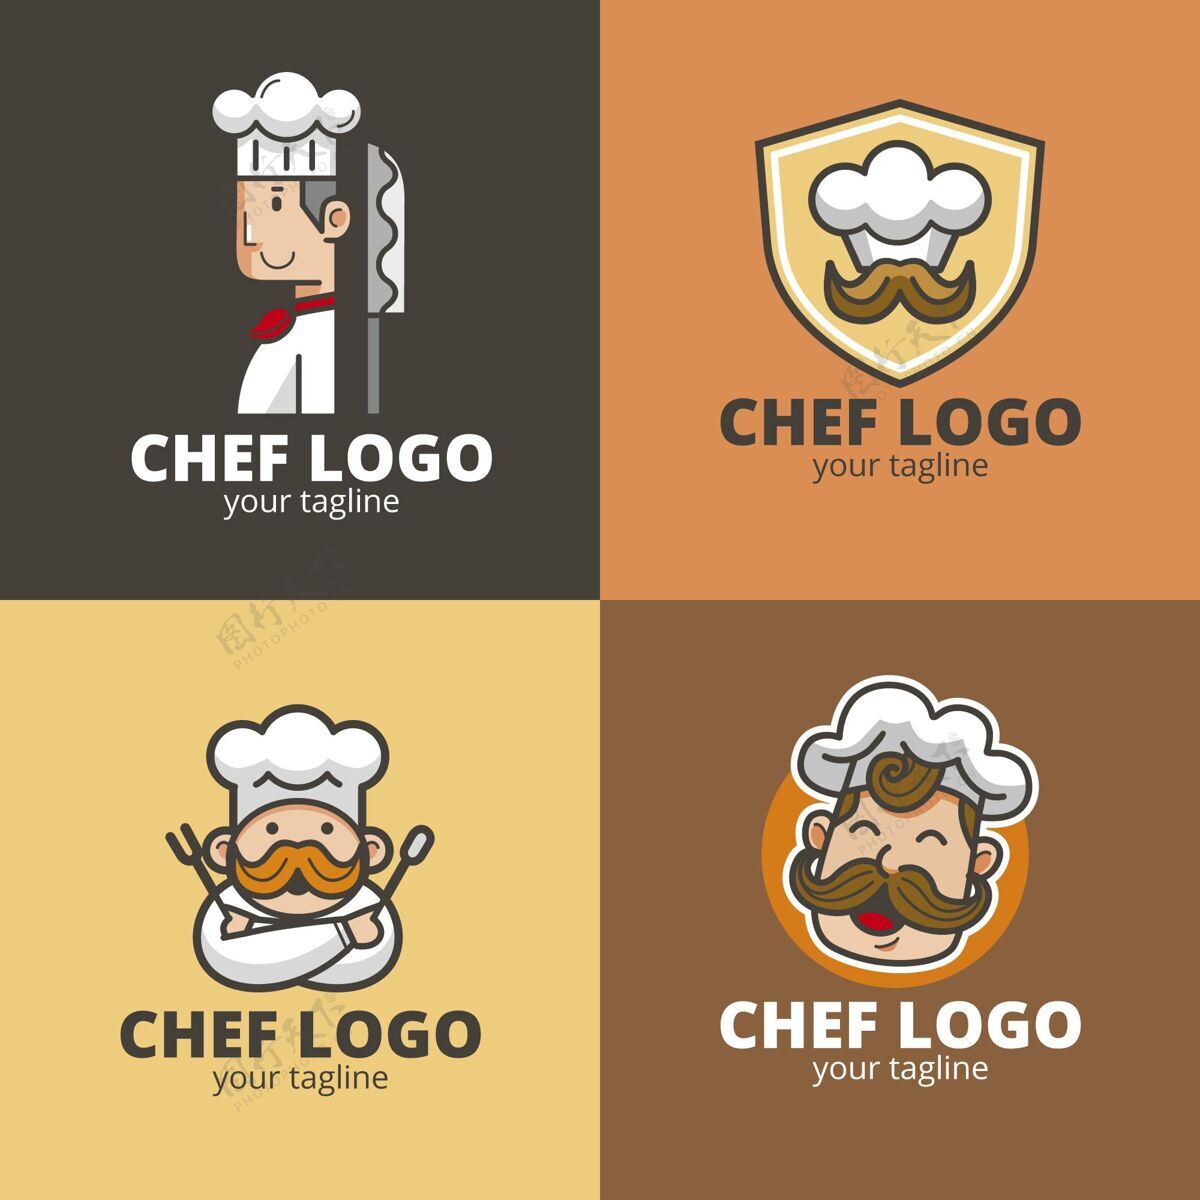 企业标识平面设计厨师标志收集标识模板标志品牌